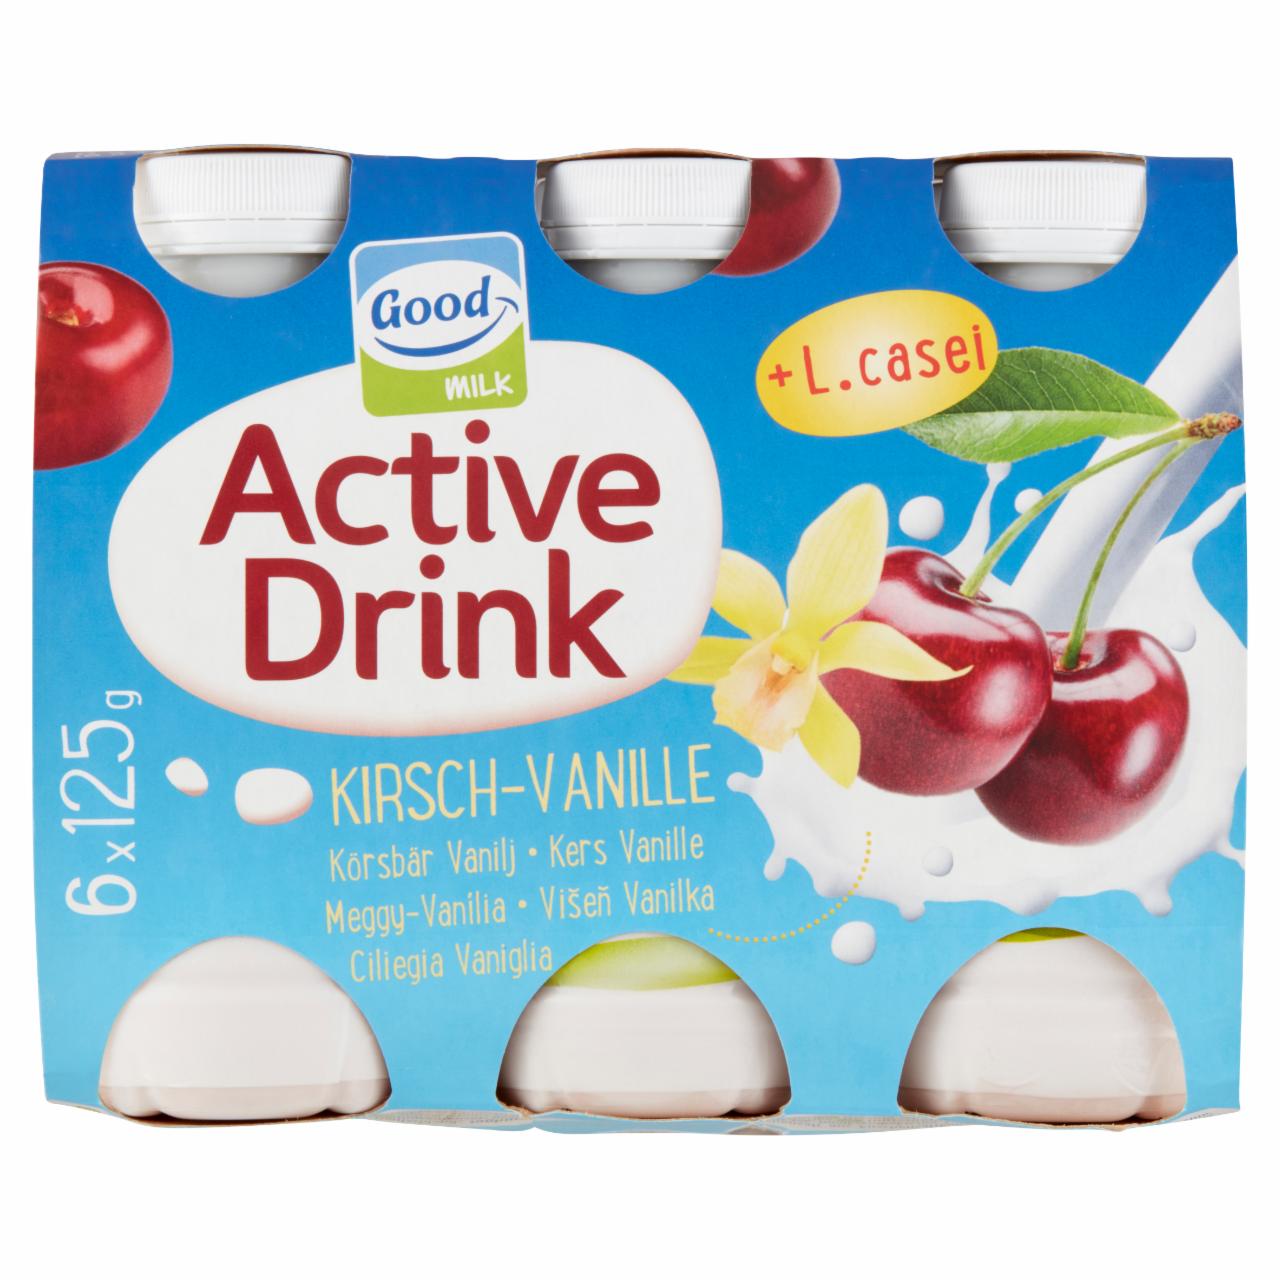 Képek - Good Milk Active Drink meggy-vanília zsírszegény joghurtital 6 x 125 g (750 g)